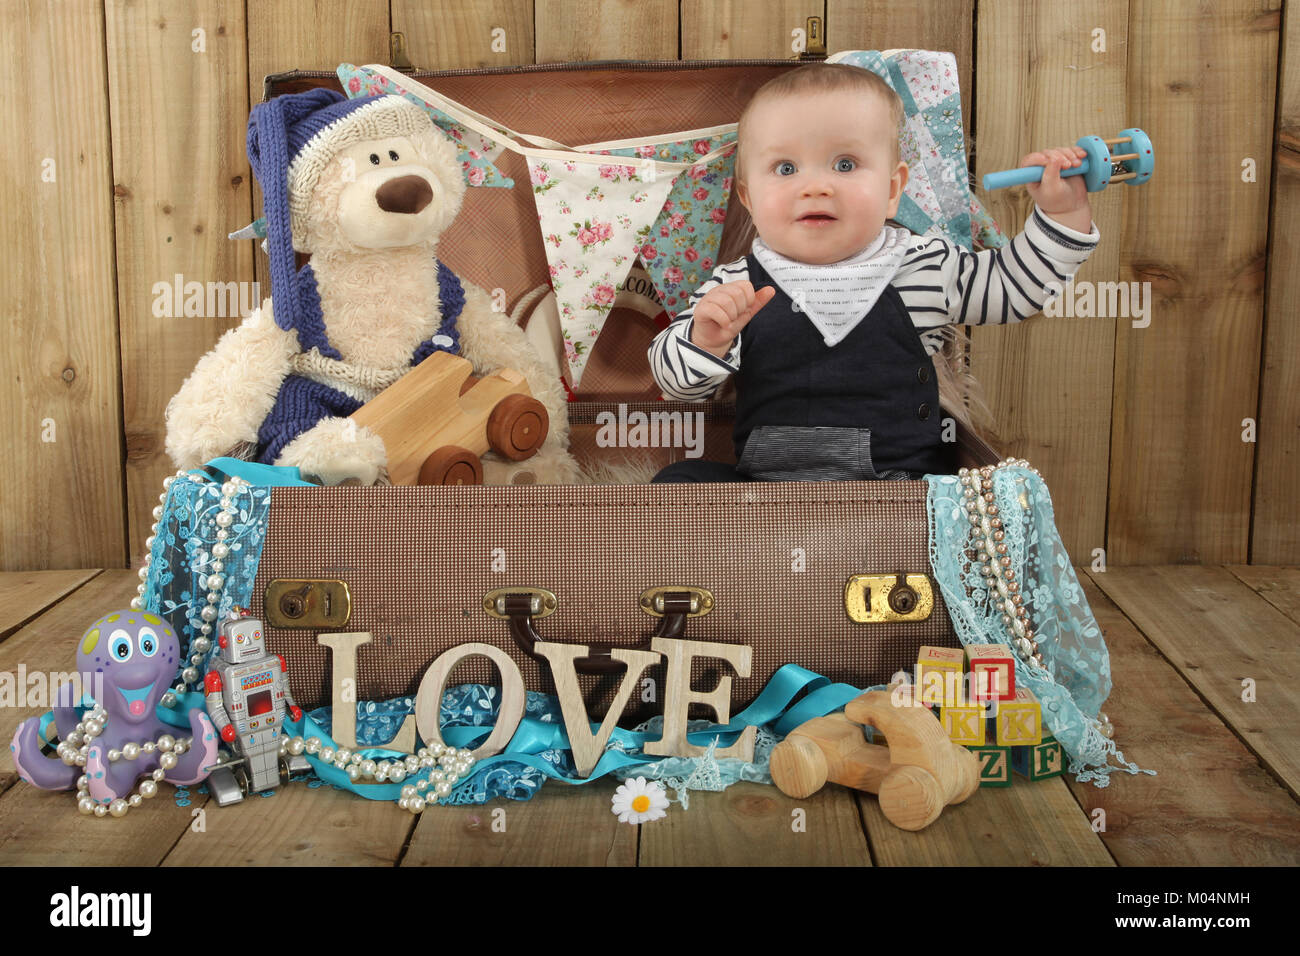 Un bébé de 9 mois Garçon jouant dans suitcase avec teddy Banque D'Images